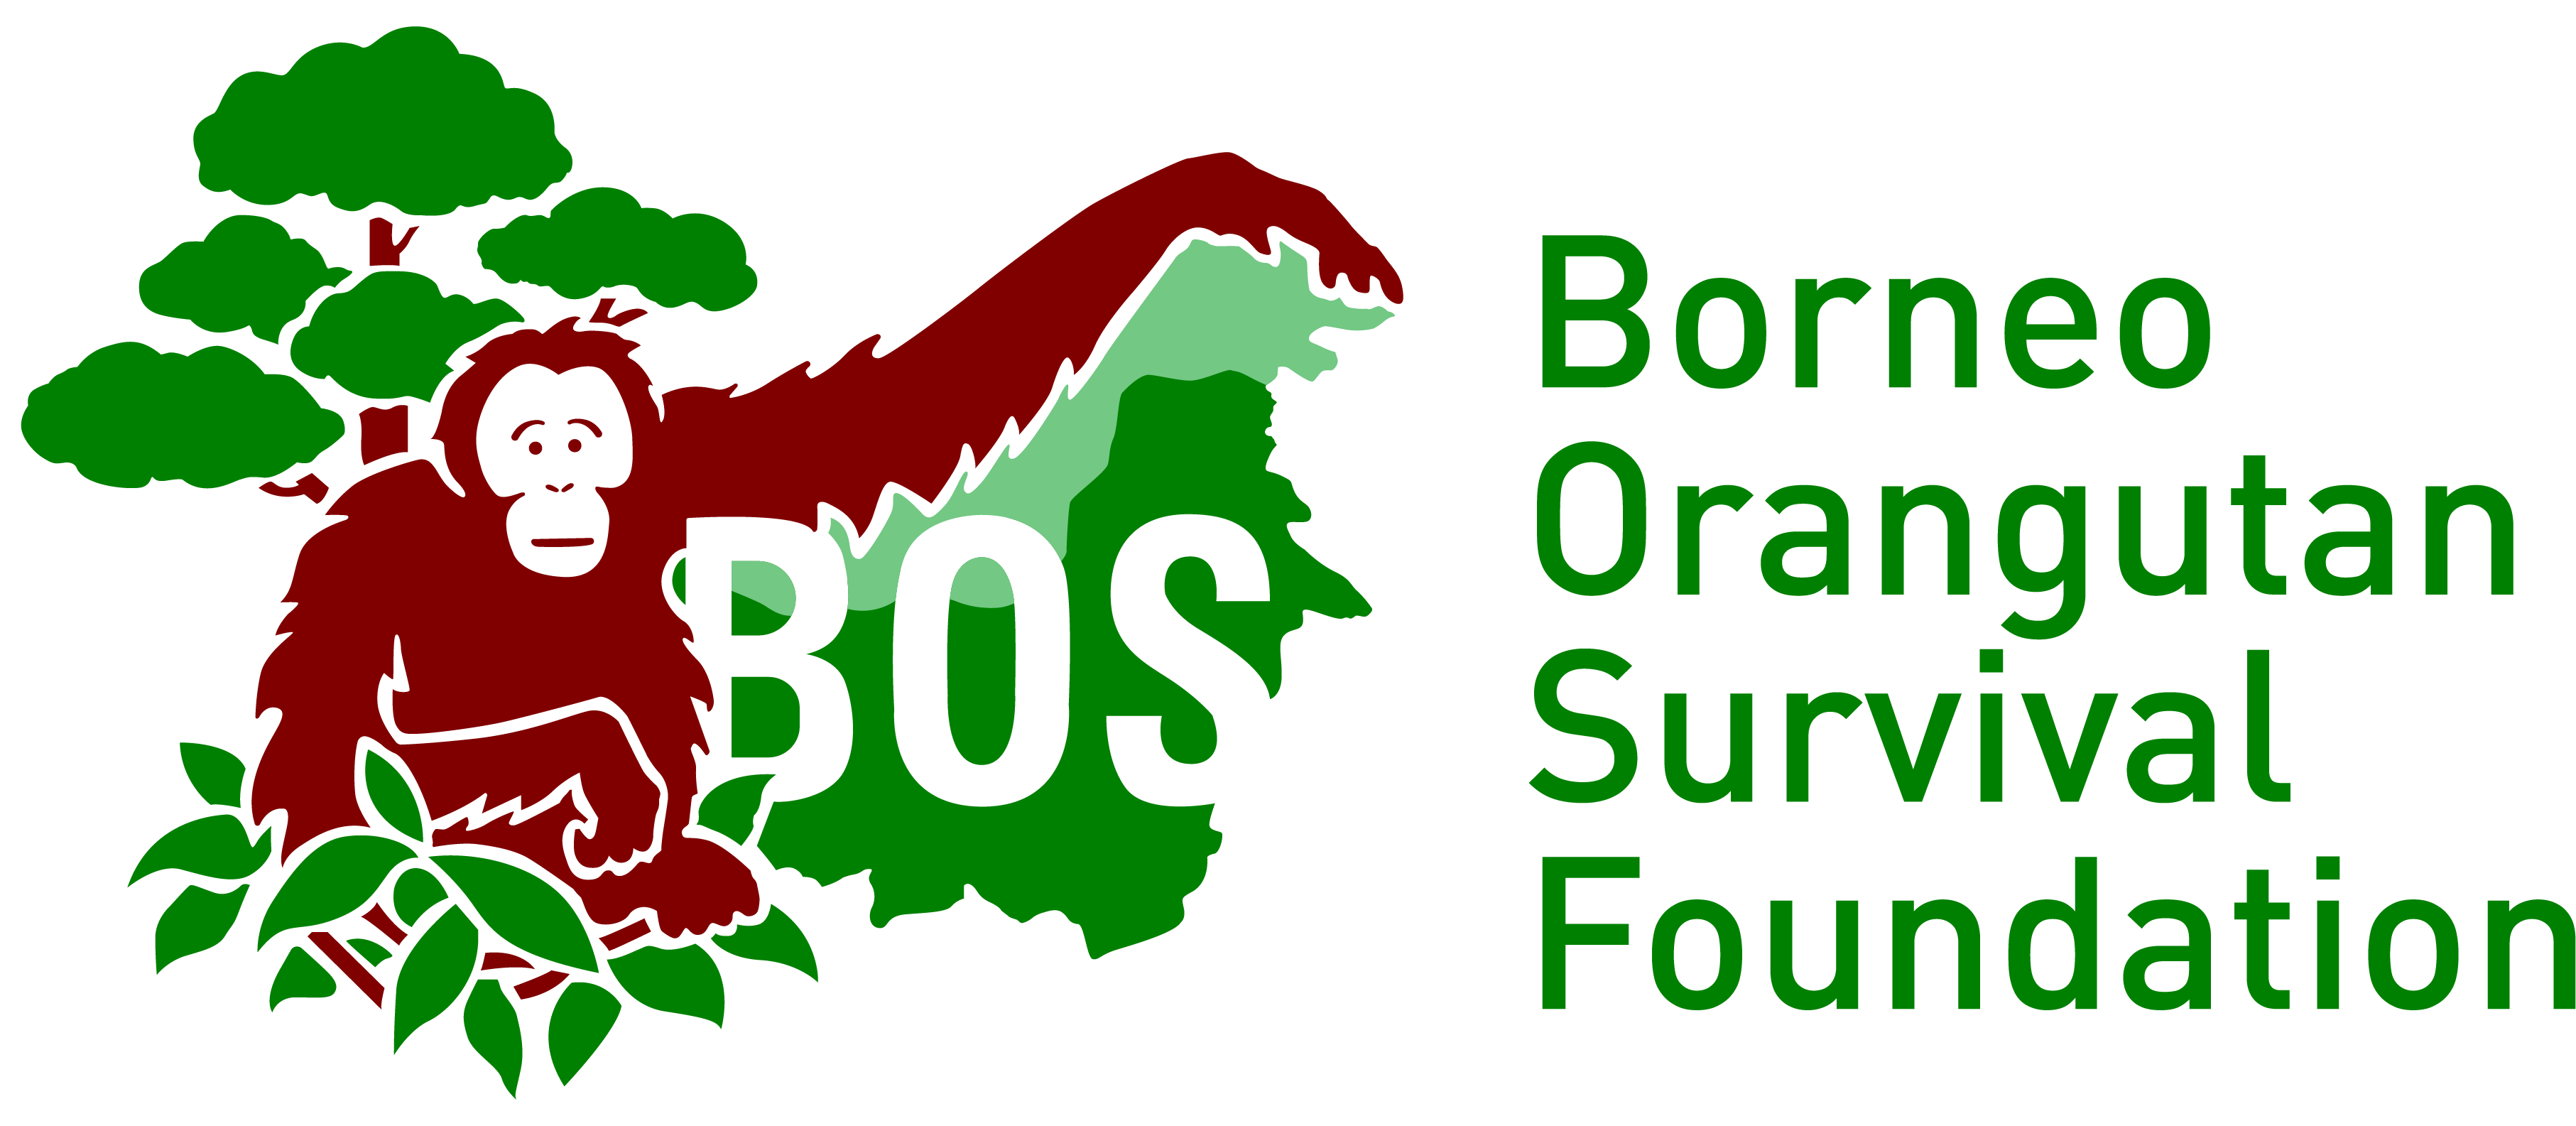 The Borneo Orangutan Survival (BOS) Foundation